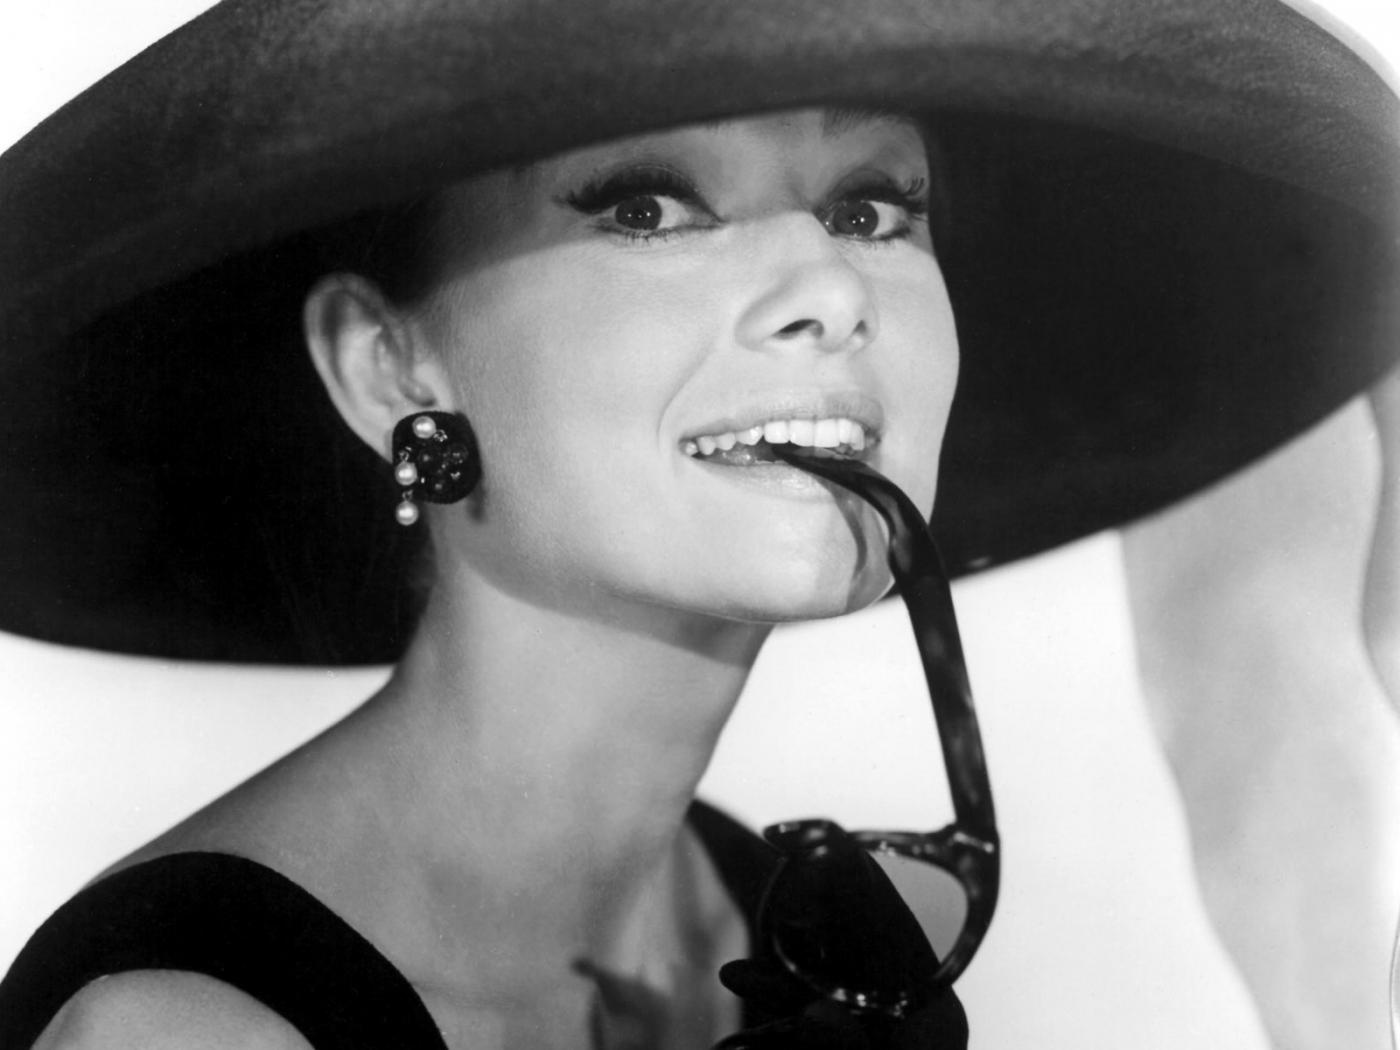 Like Audrey Hepburn: повторяем образы героинь голливудских фильмов